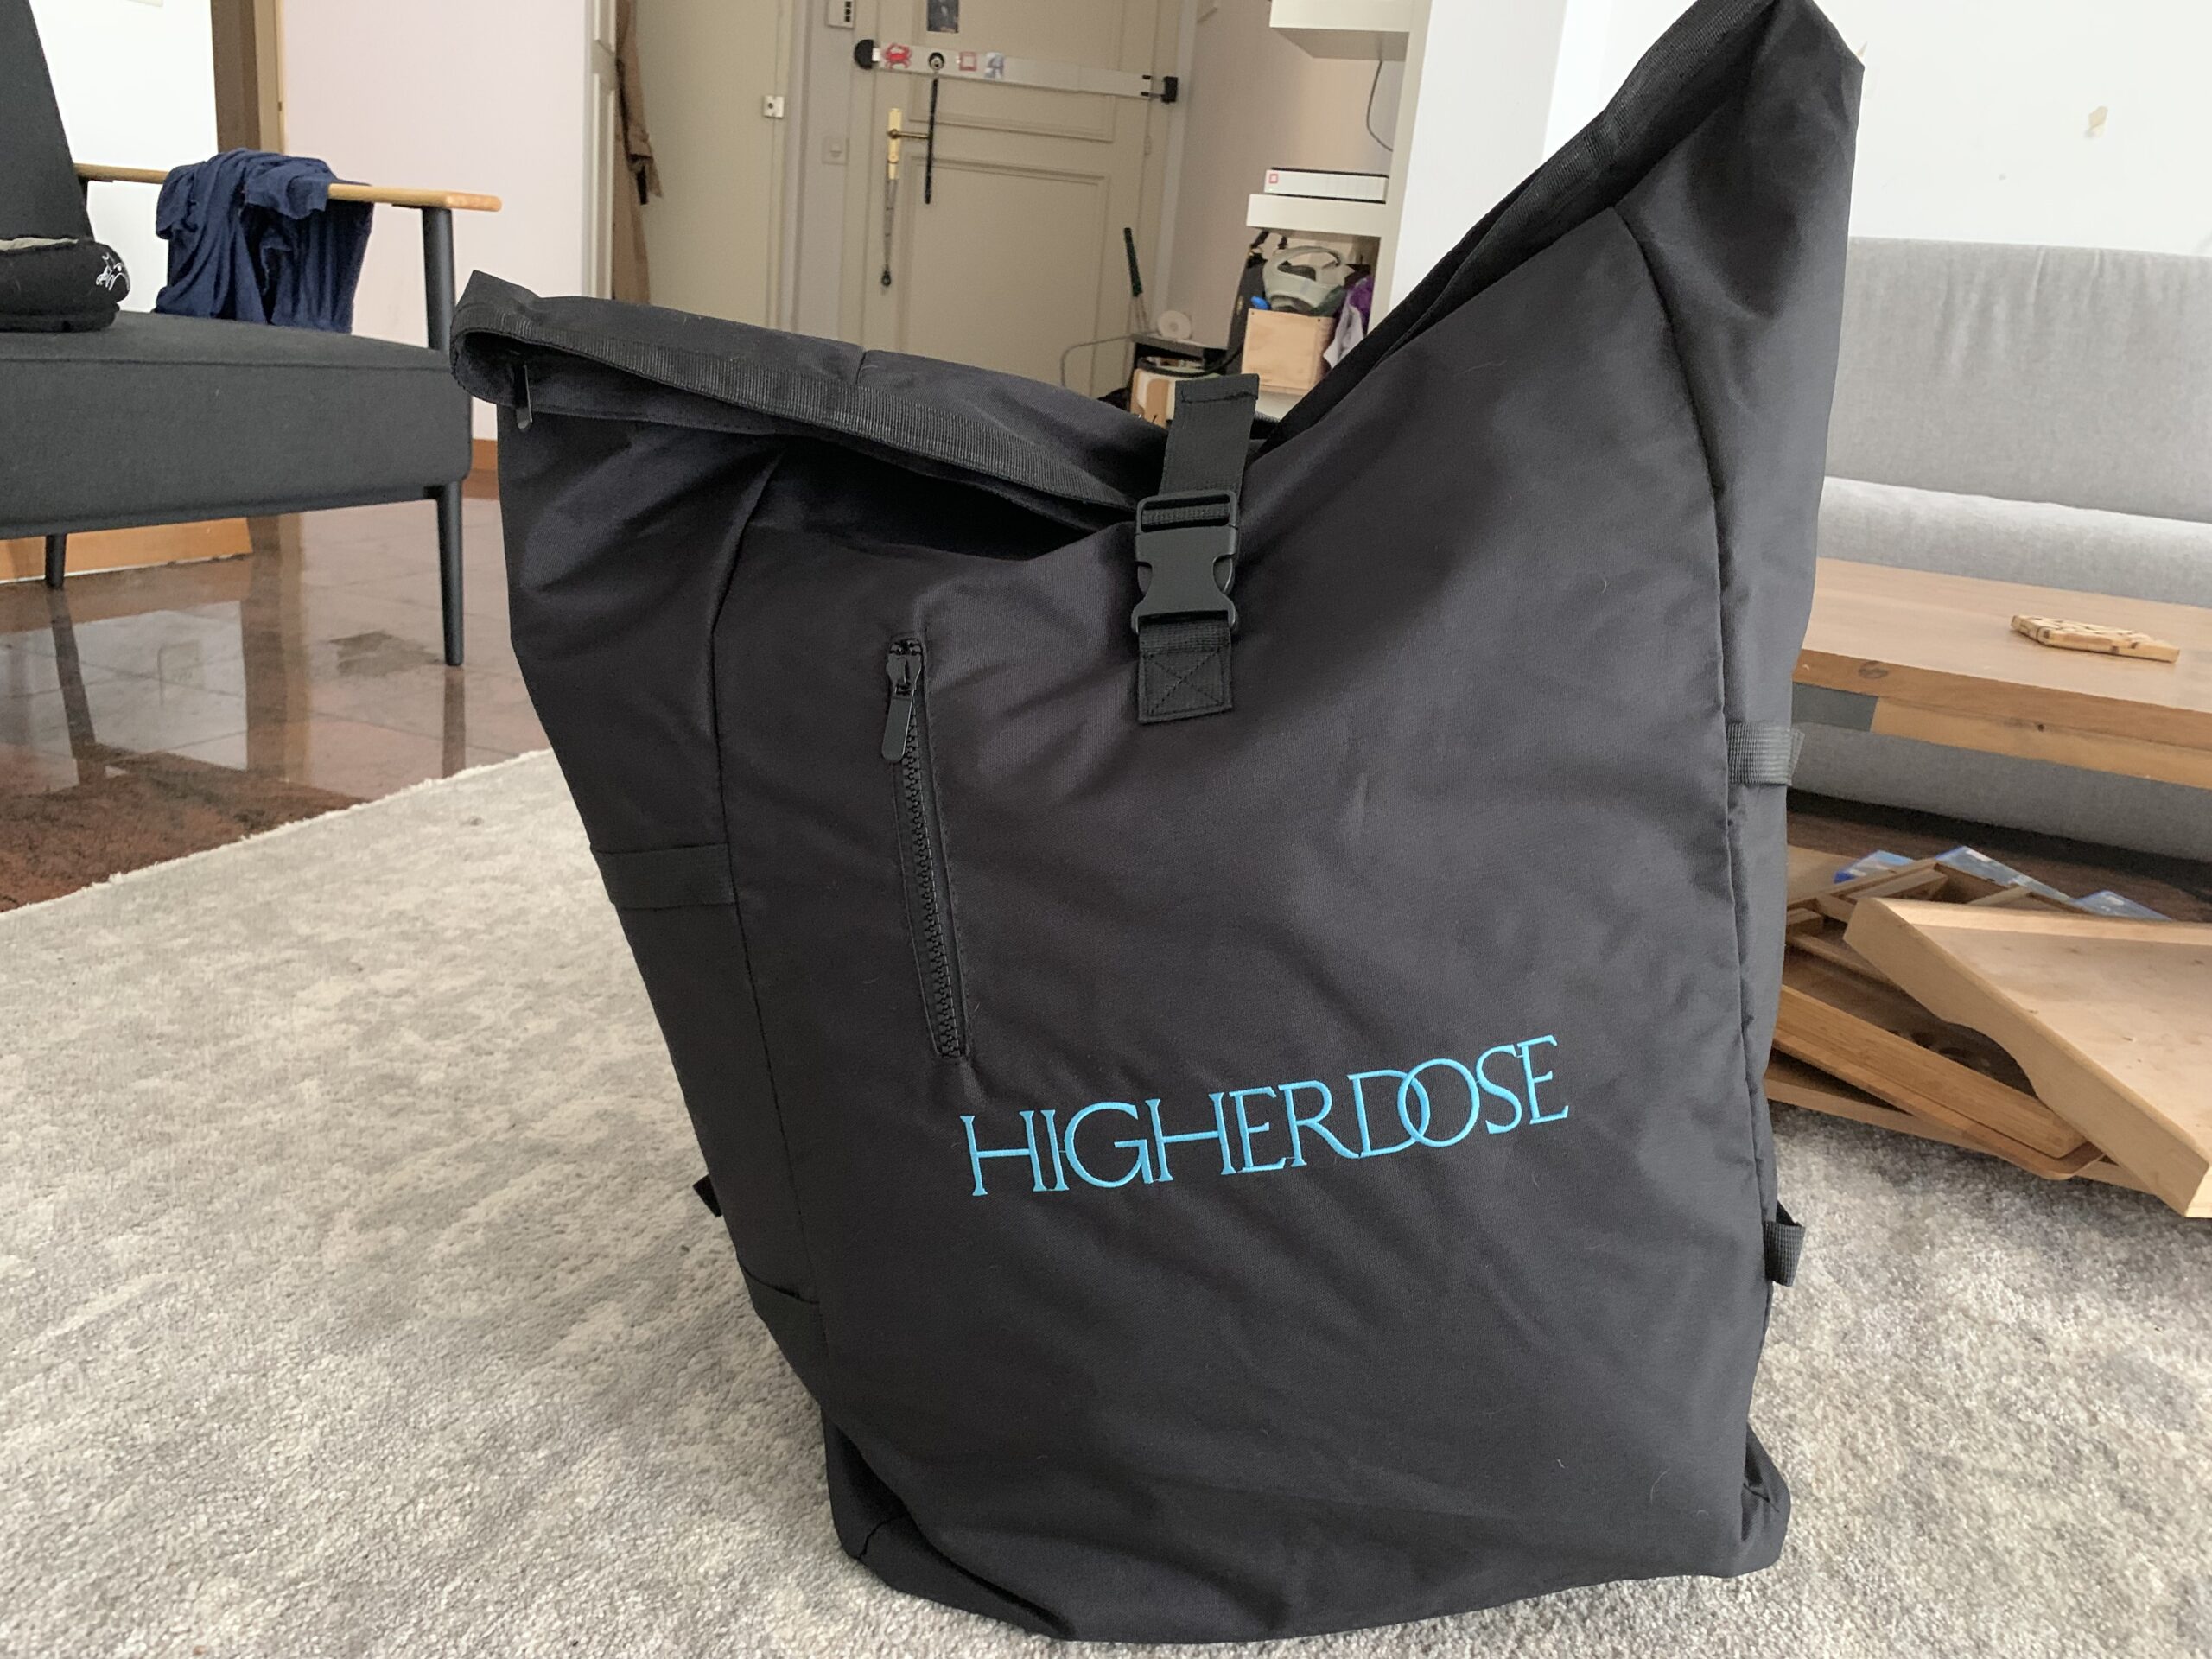 Higher Dose Sauna Blanket travel bag